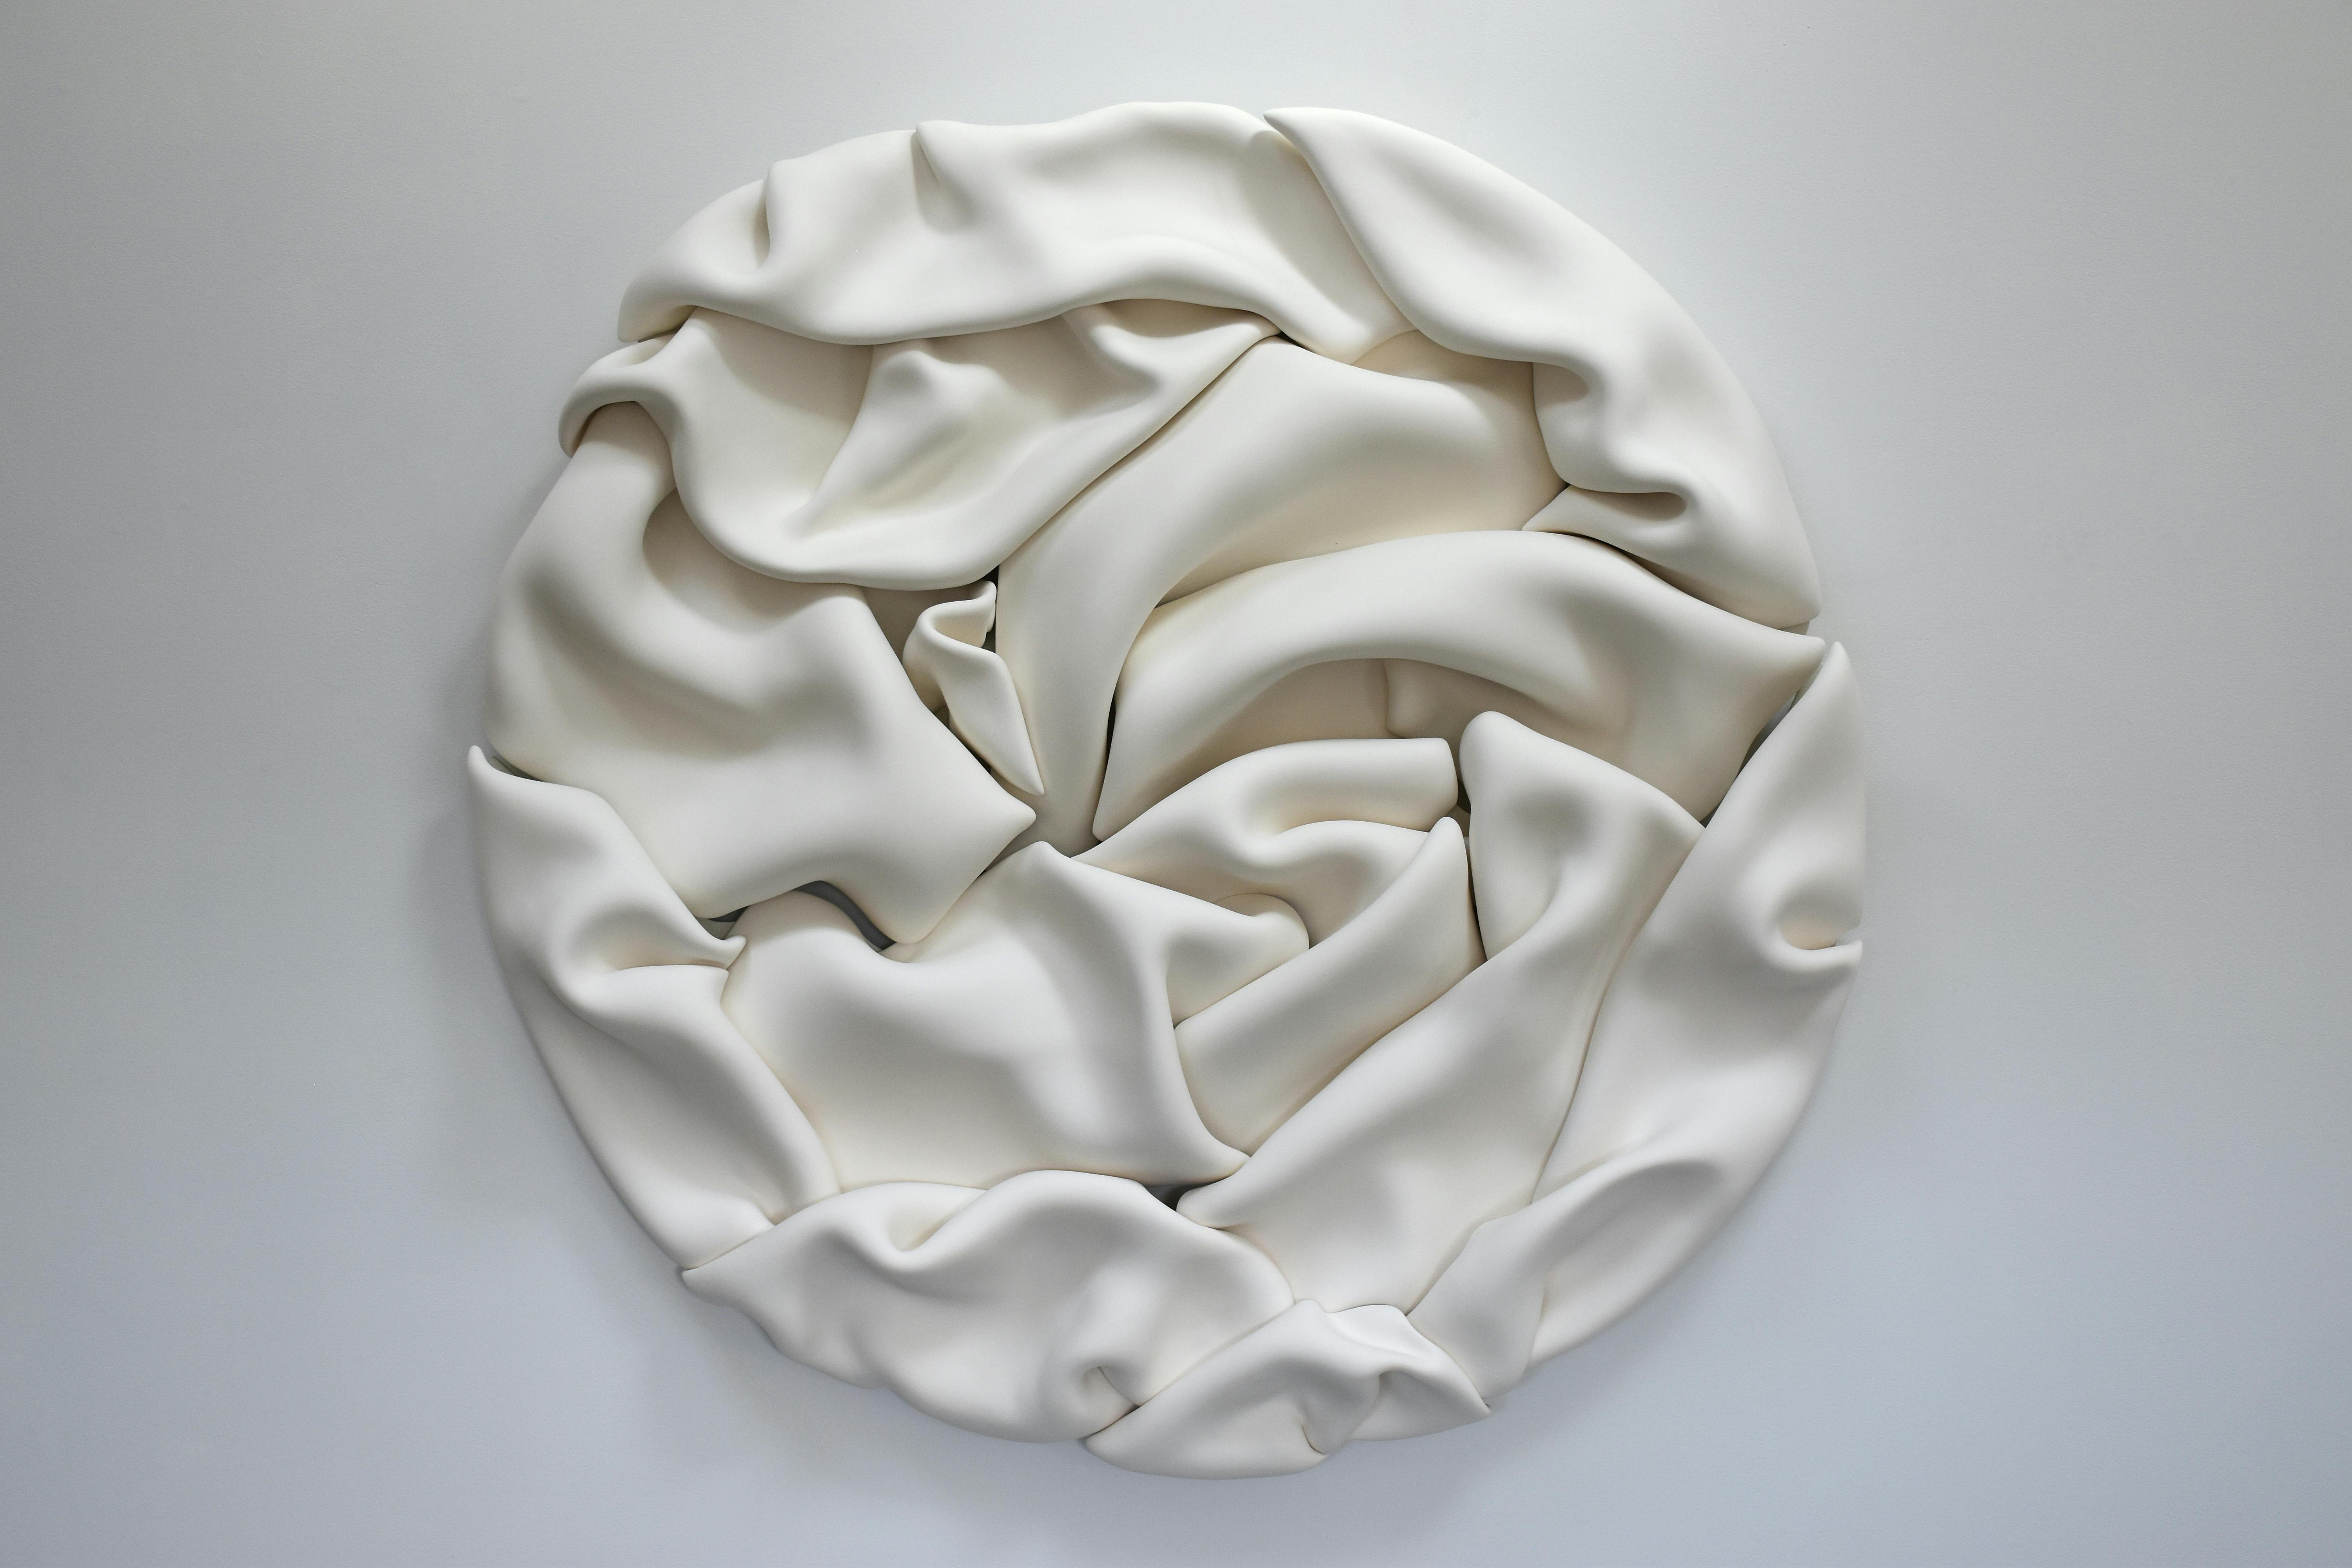 sculptural ceramic work by jeannine marchand